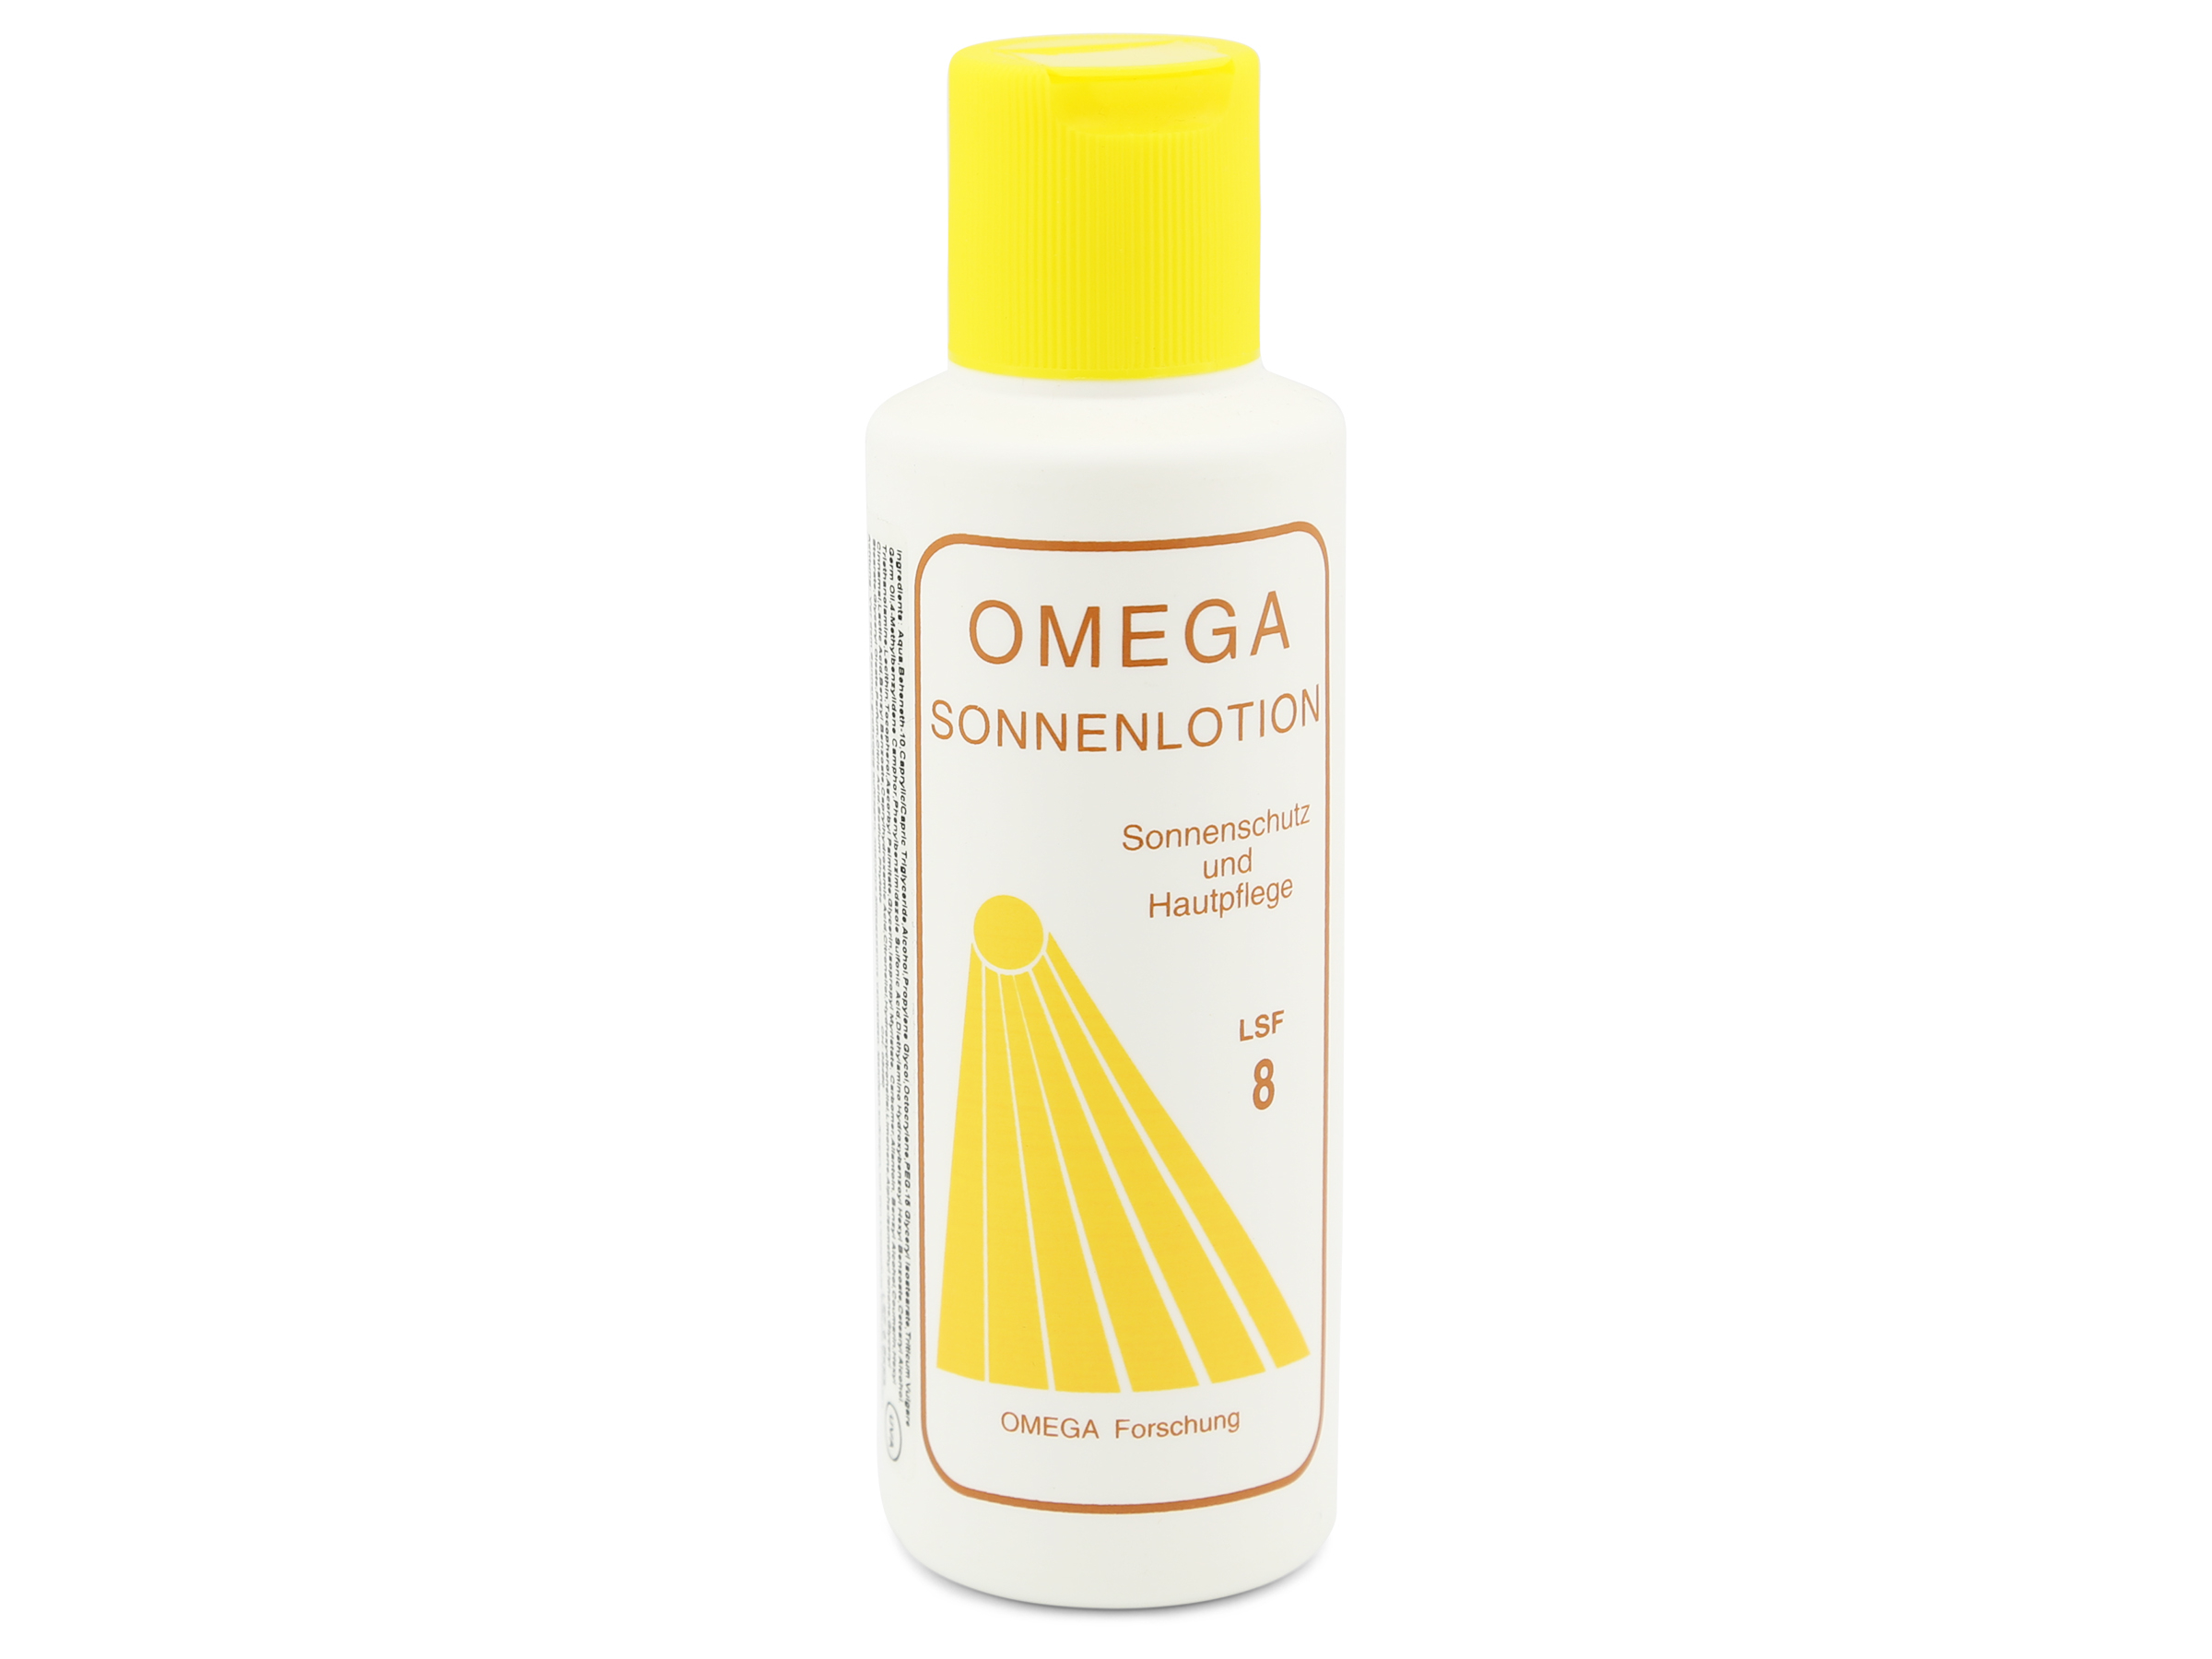 OMEGA - Sonnenlotion LSF 8 - 200 ml